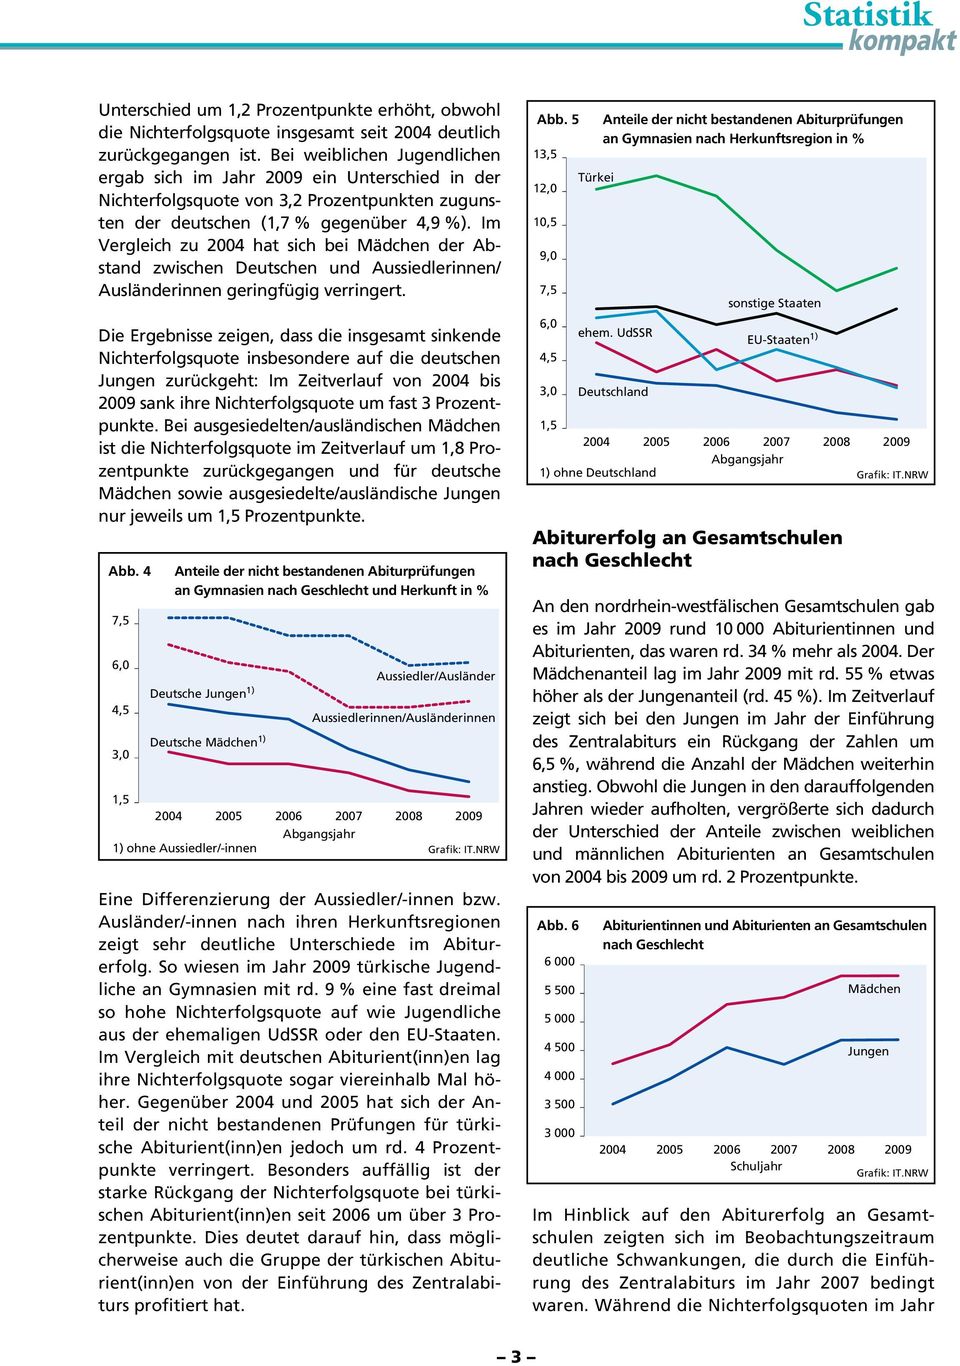 Im Vergleich zu 2004 hat sich bei der Abstand zwischen Deutschen und Aussiedlerinnen/ Ausländerinnen geringfügig verringert.